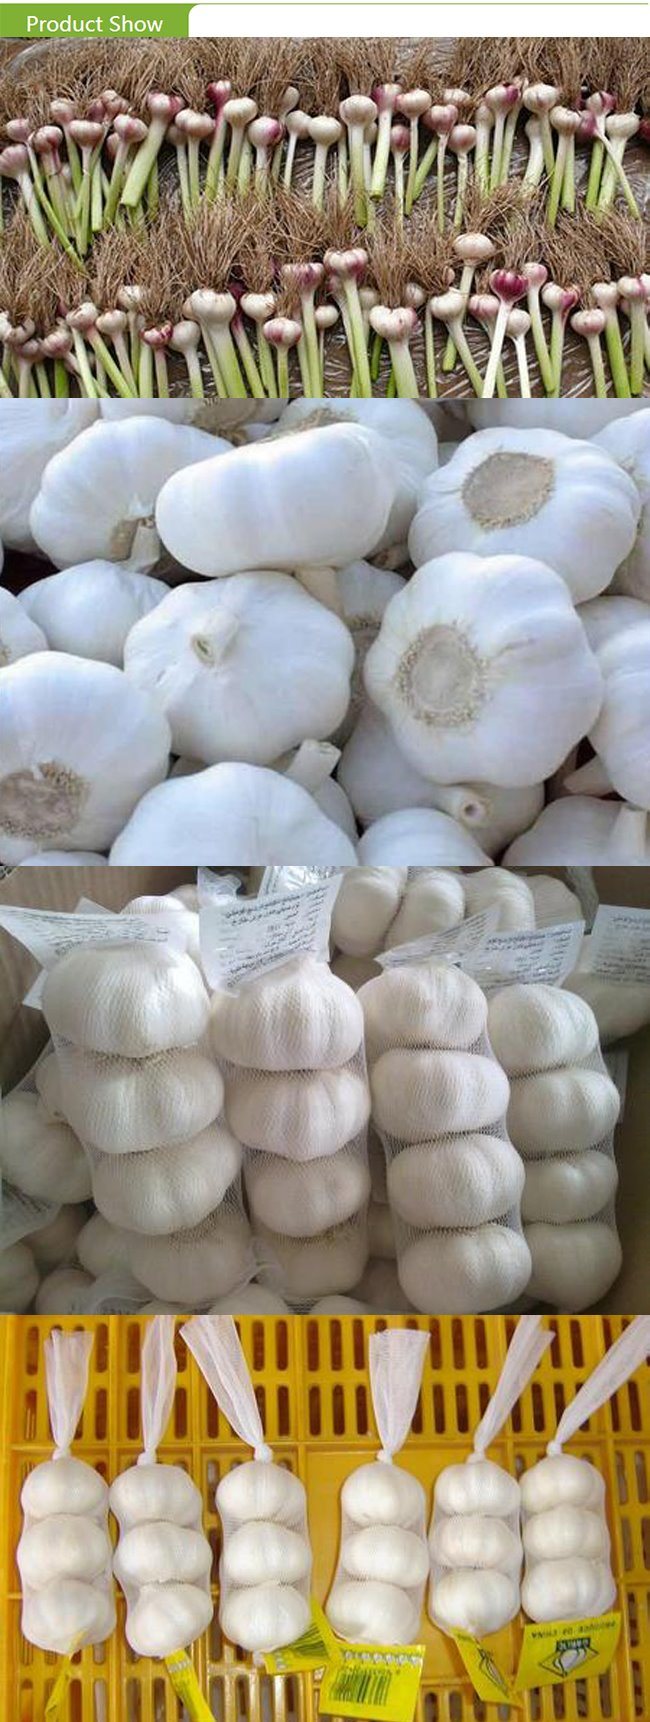 Export Standard Frozen Garlic Puree Tablet